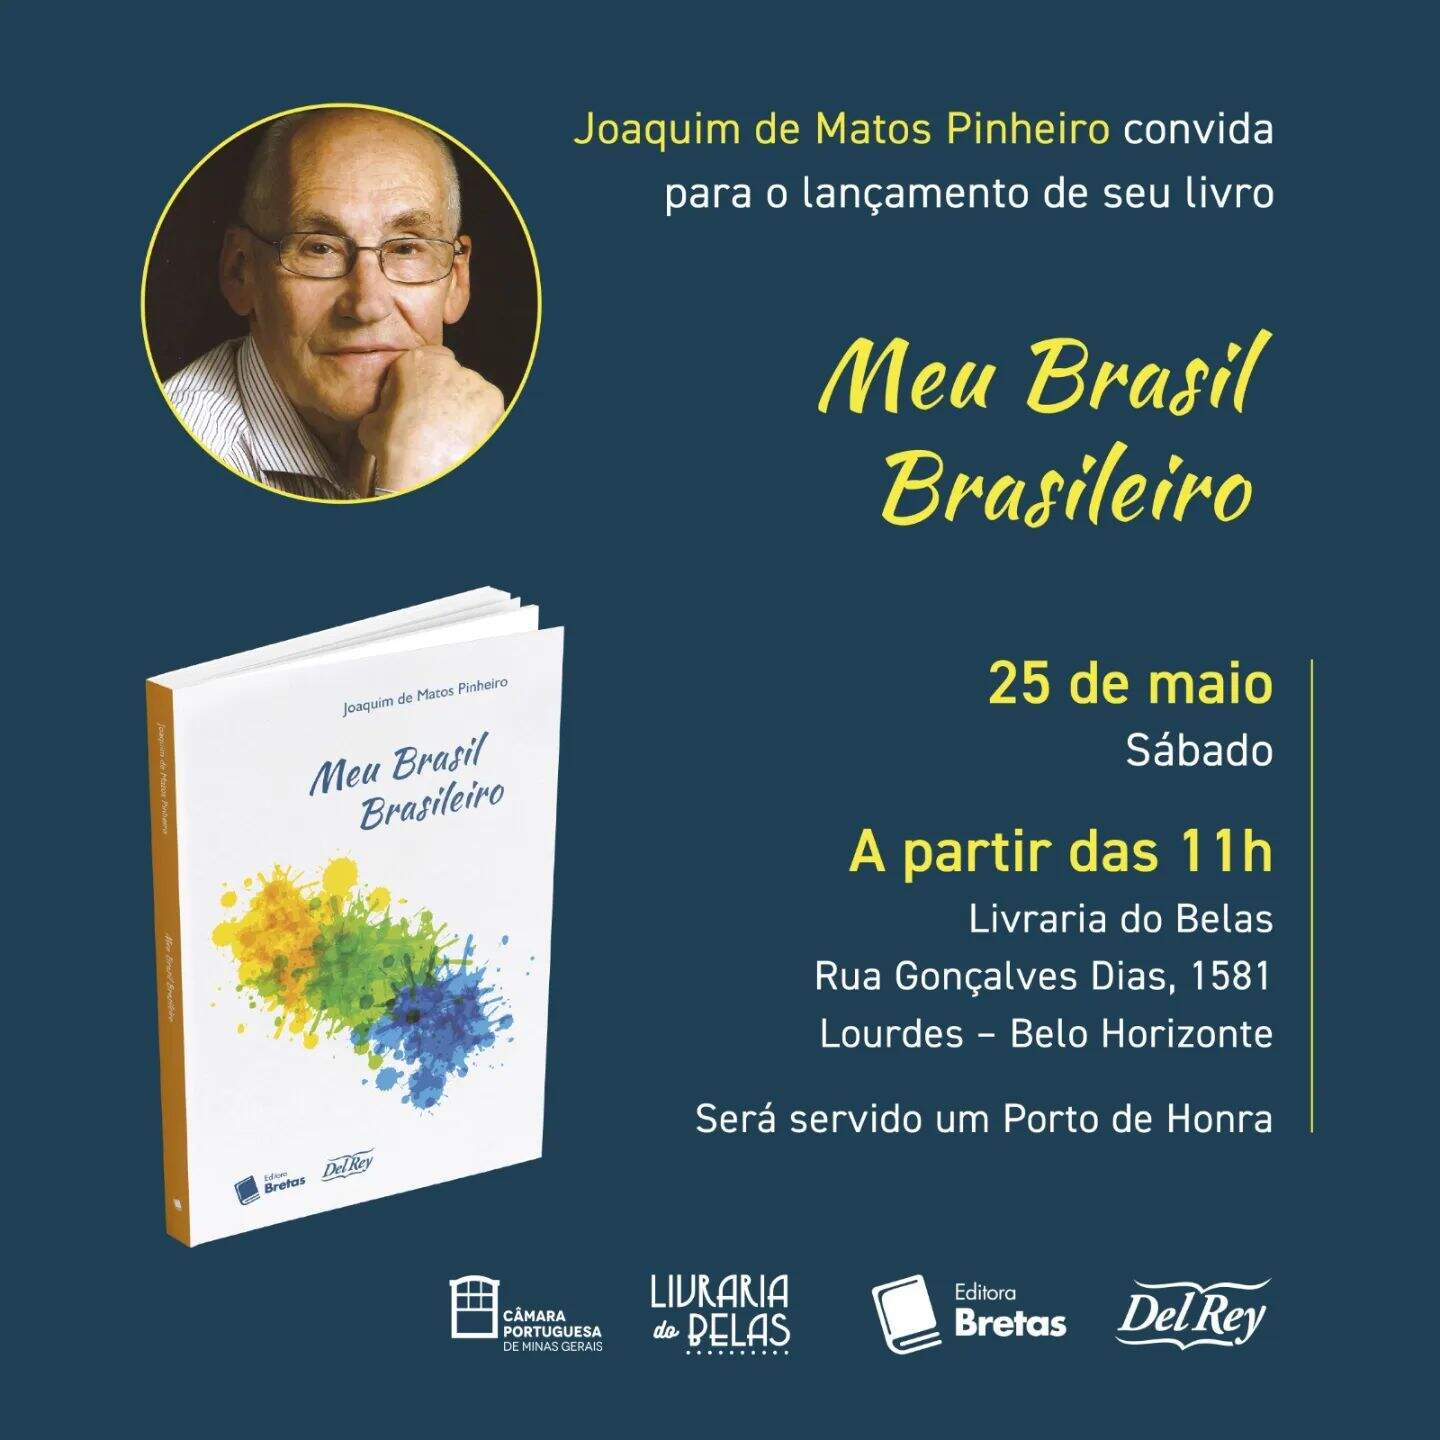 Lançamento do Livro "Meu Brasil Brasileiro" de Joaquim de Matos Pinheiro